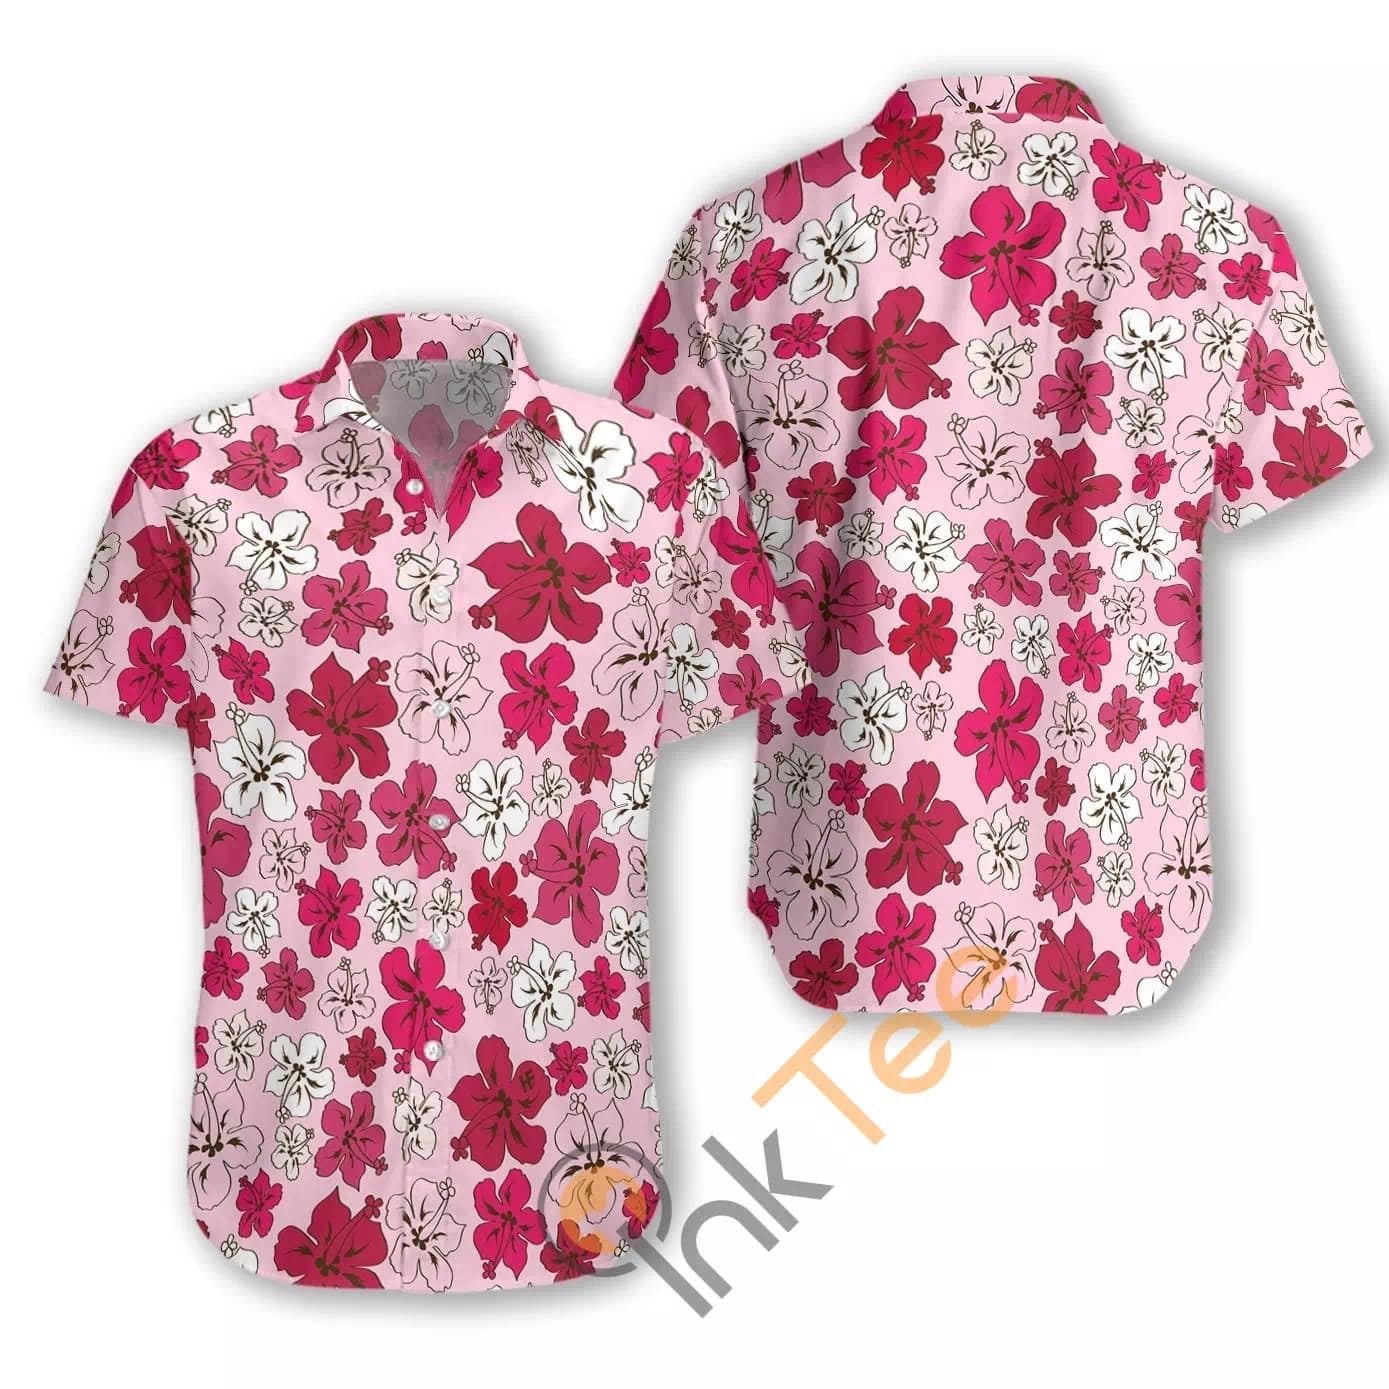 Floral Flower 25 N509 Hawaiian shirts